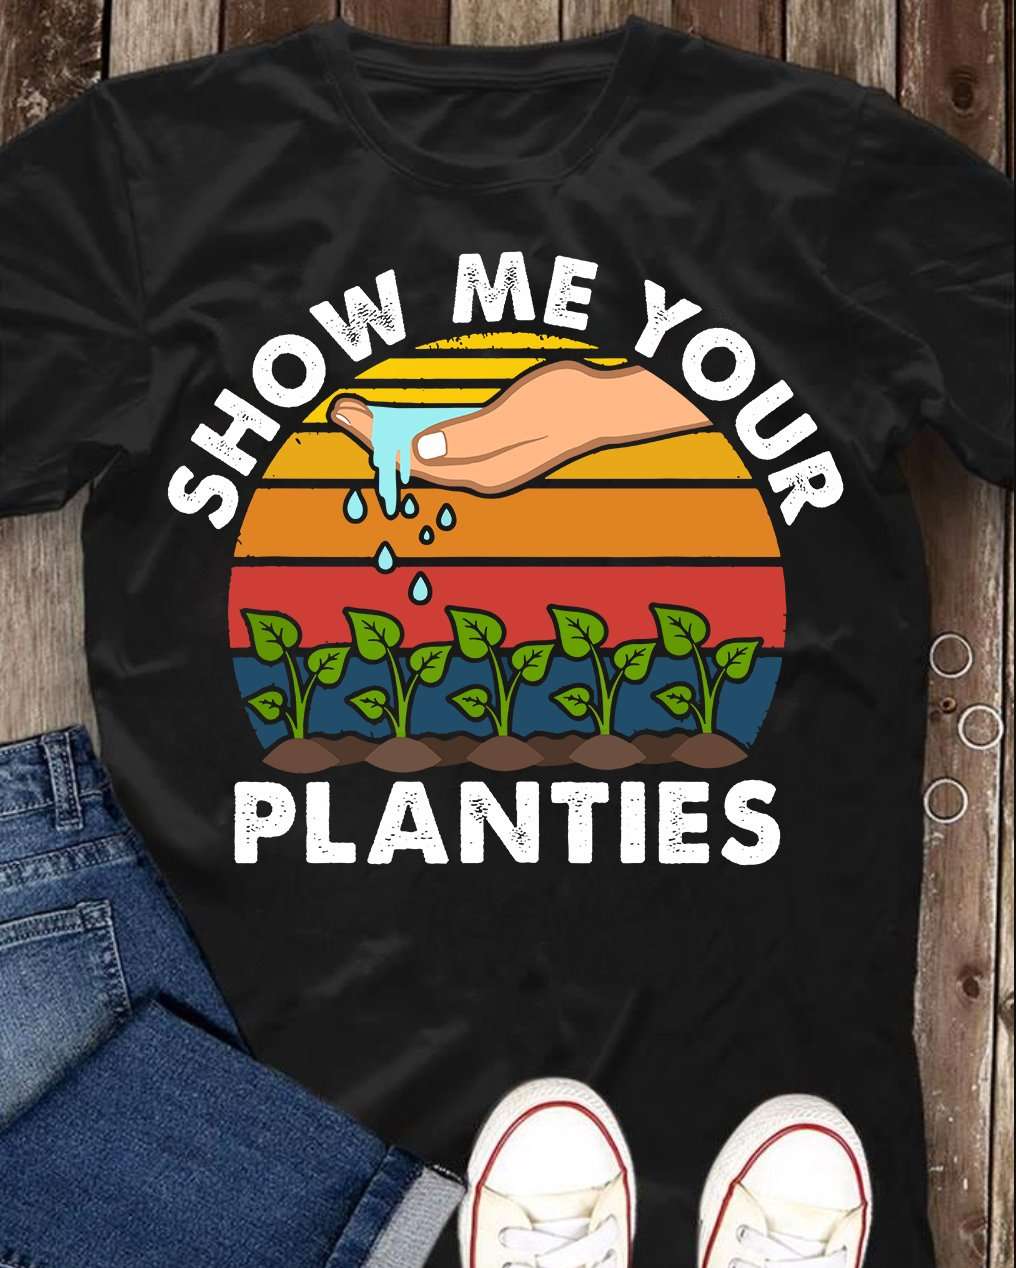 Show me your planties - Watering plants, love gardening